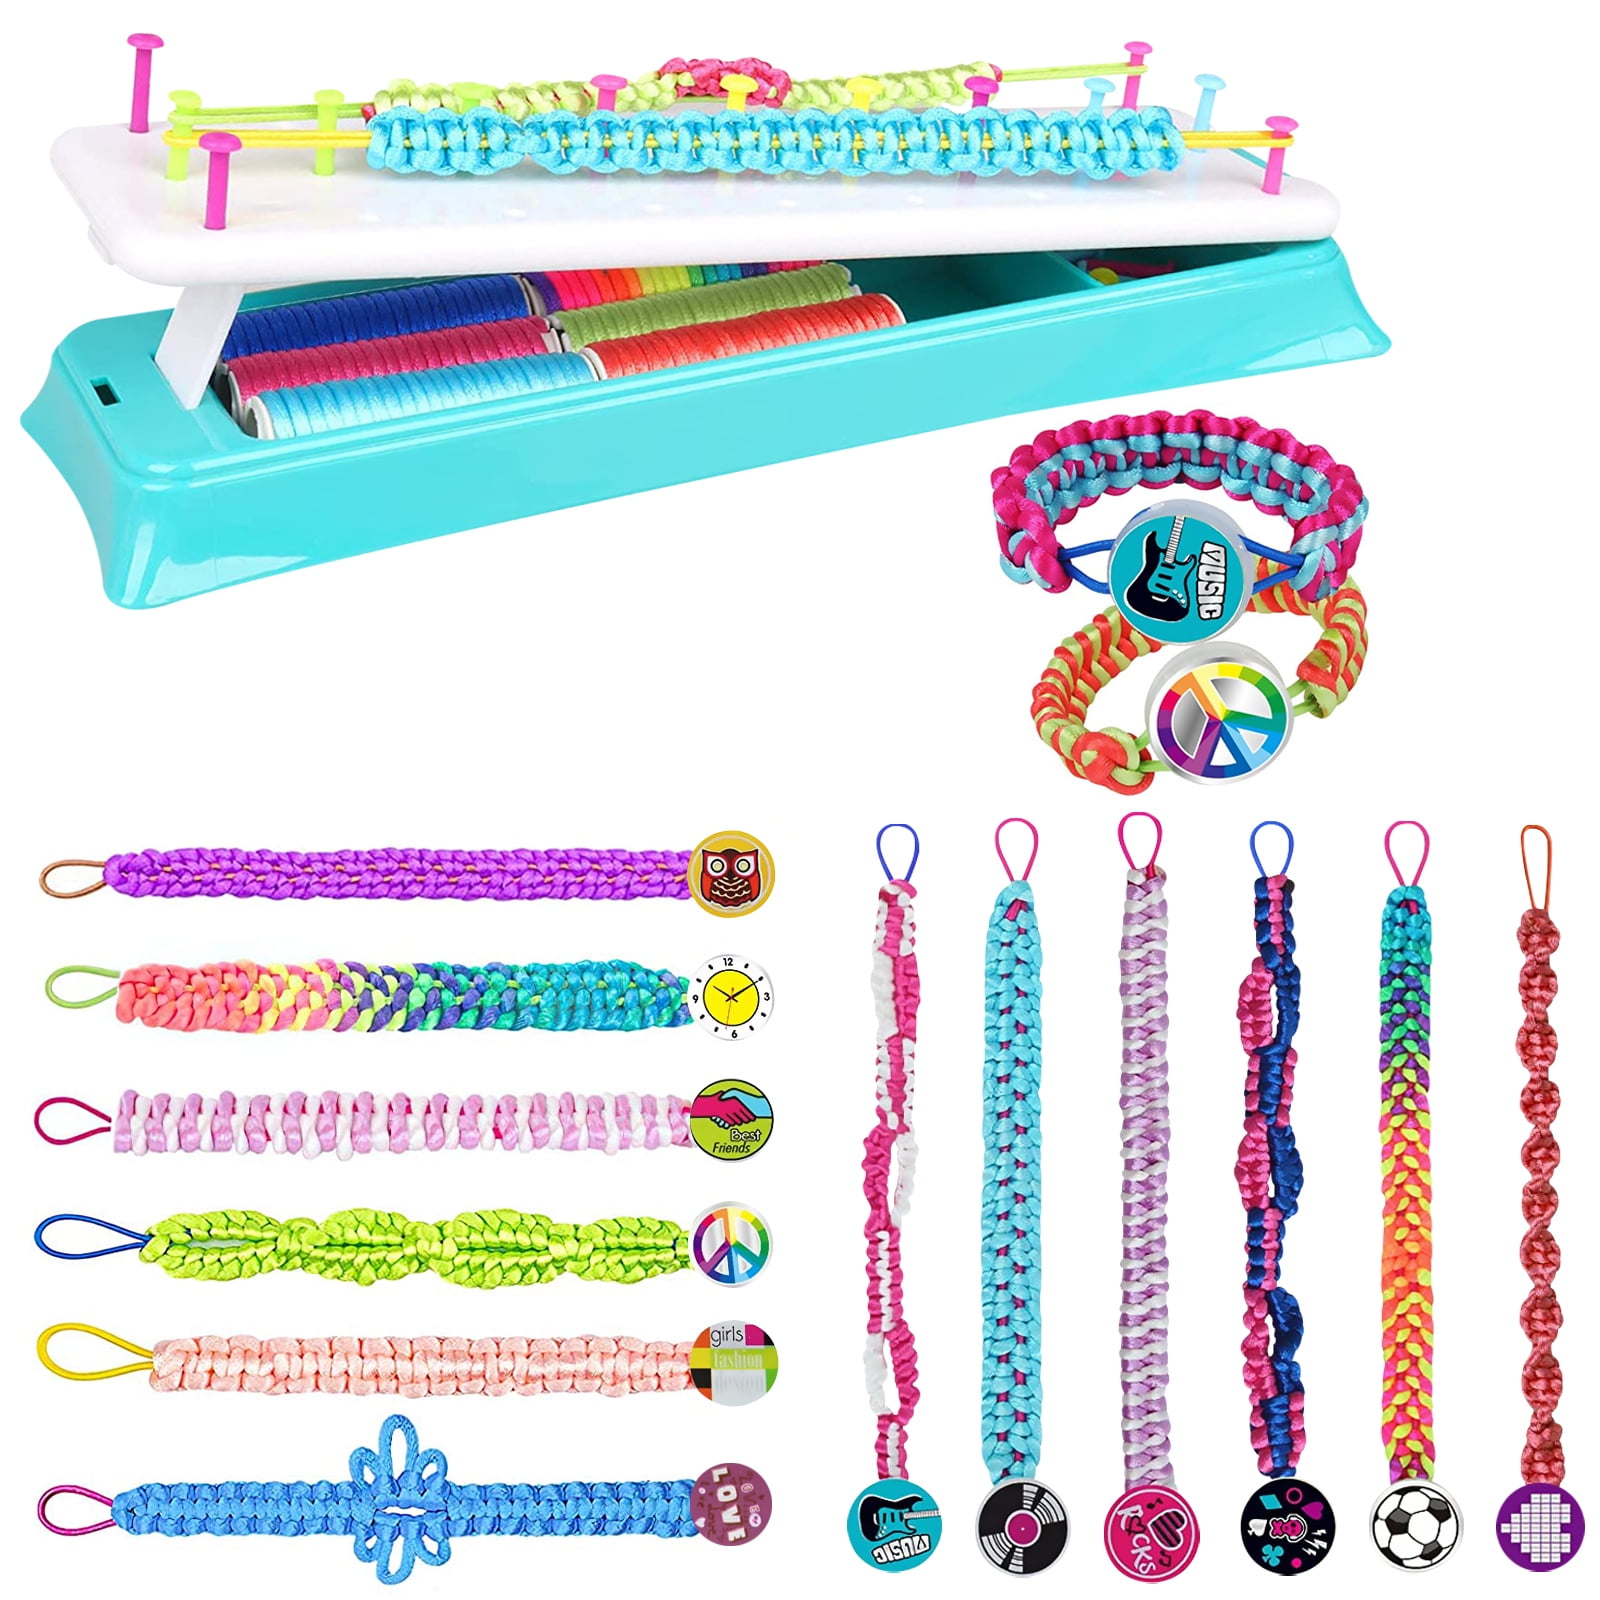  Getatoy Friendship Bracelet Making Kit for Girls, DIY